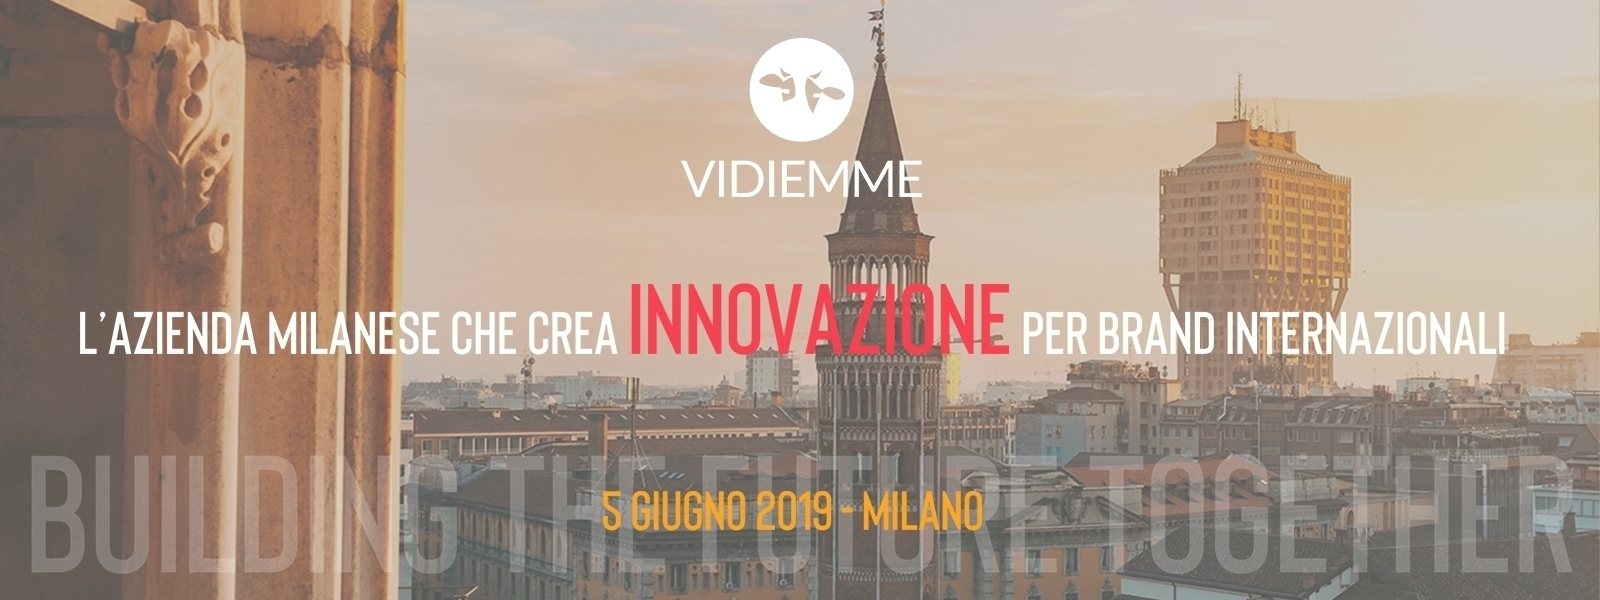 Vidiemme azienda milanese innovazione